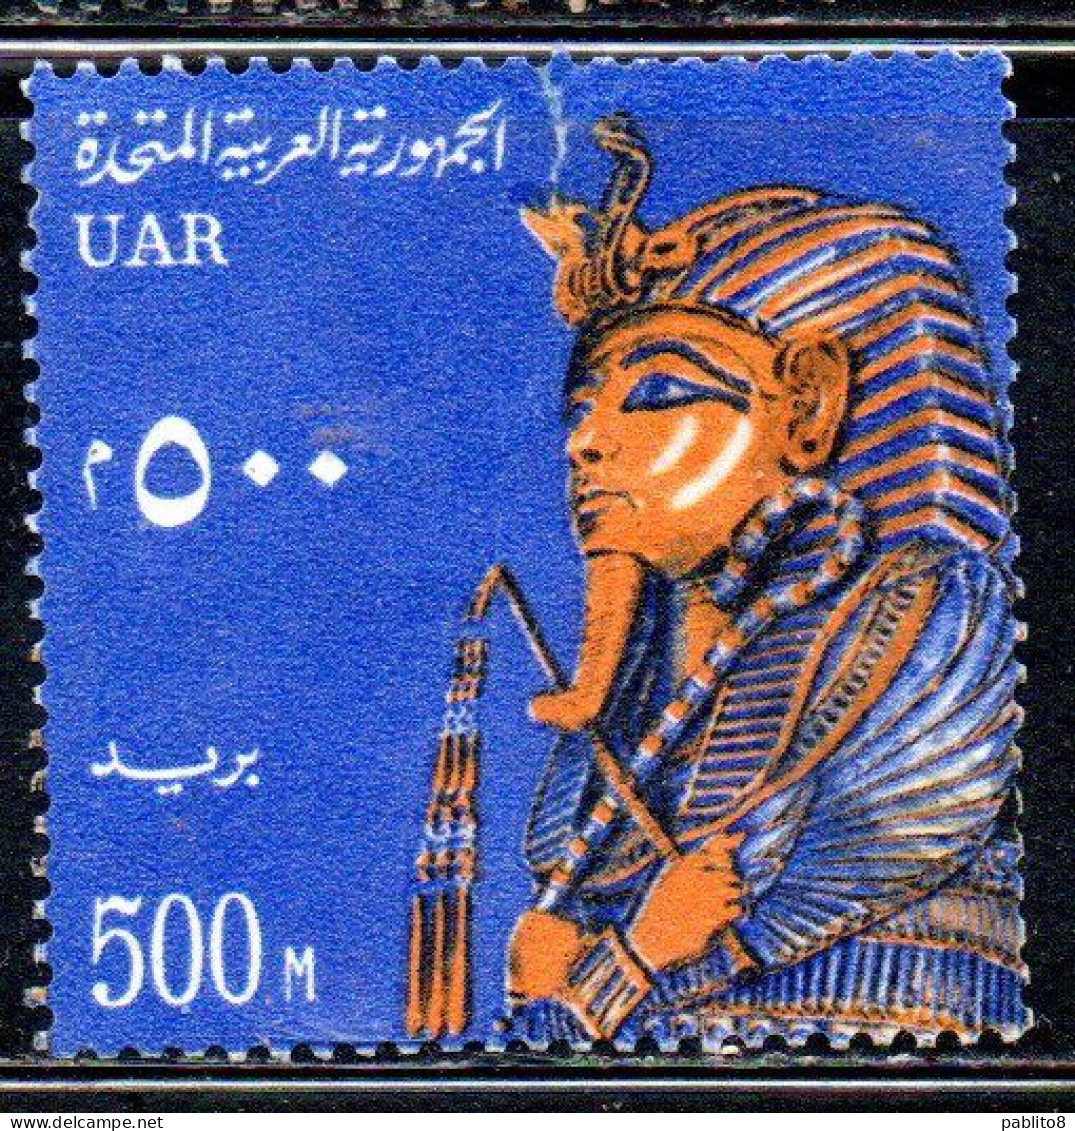 UAR EGYPT EGITTO 1964 1967 FUNERARI MASK C.F.TUTANKHAMEN 500m  MH - Ungebraucht